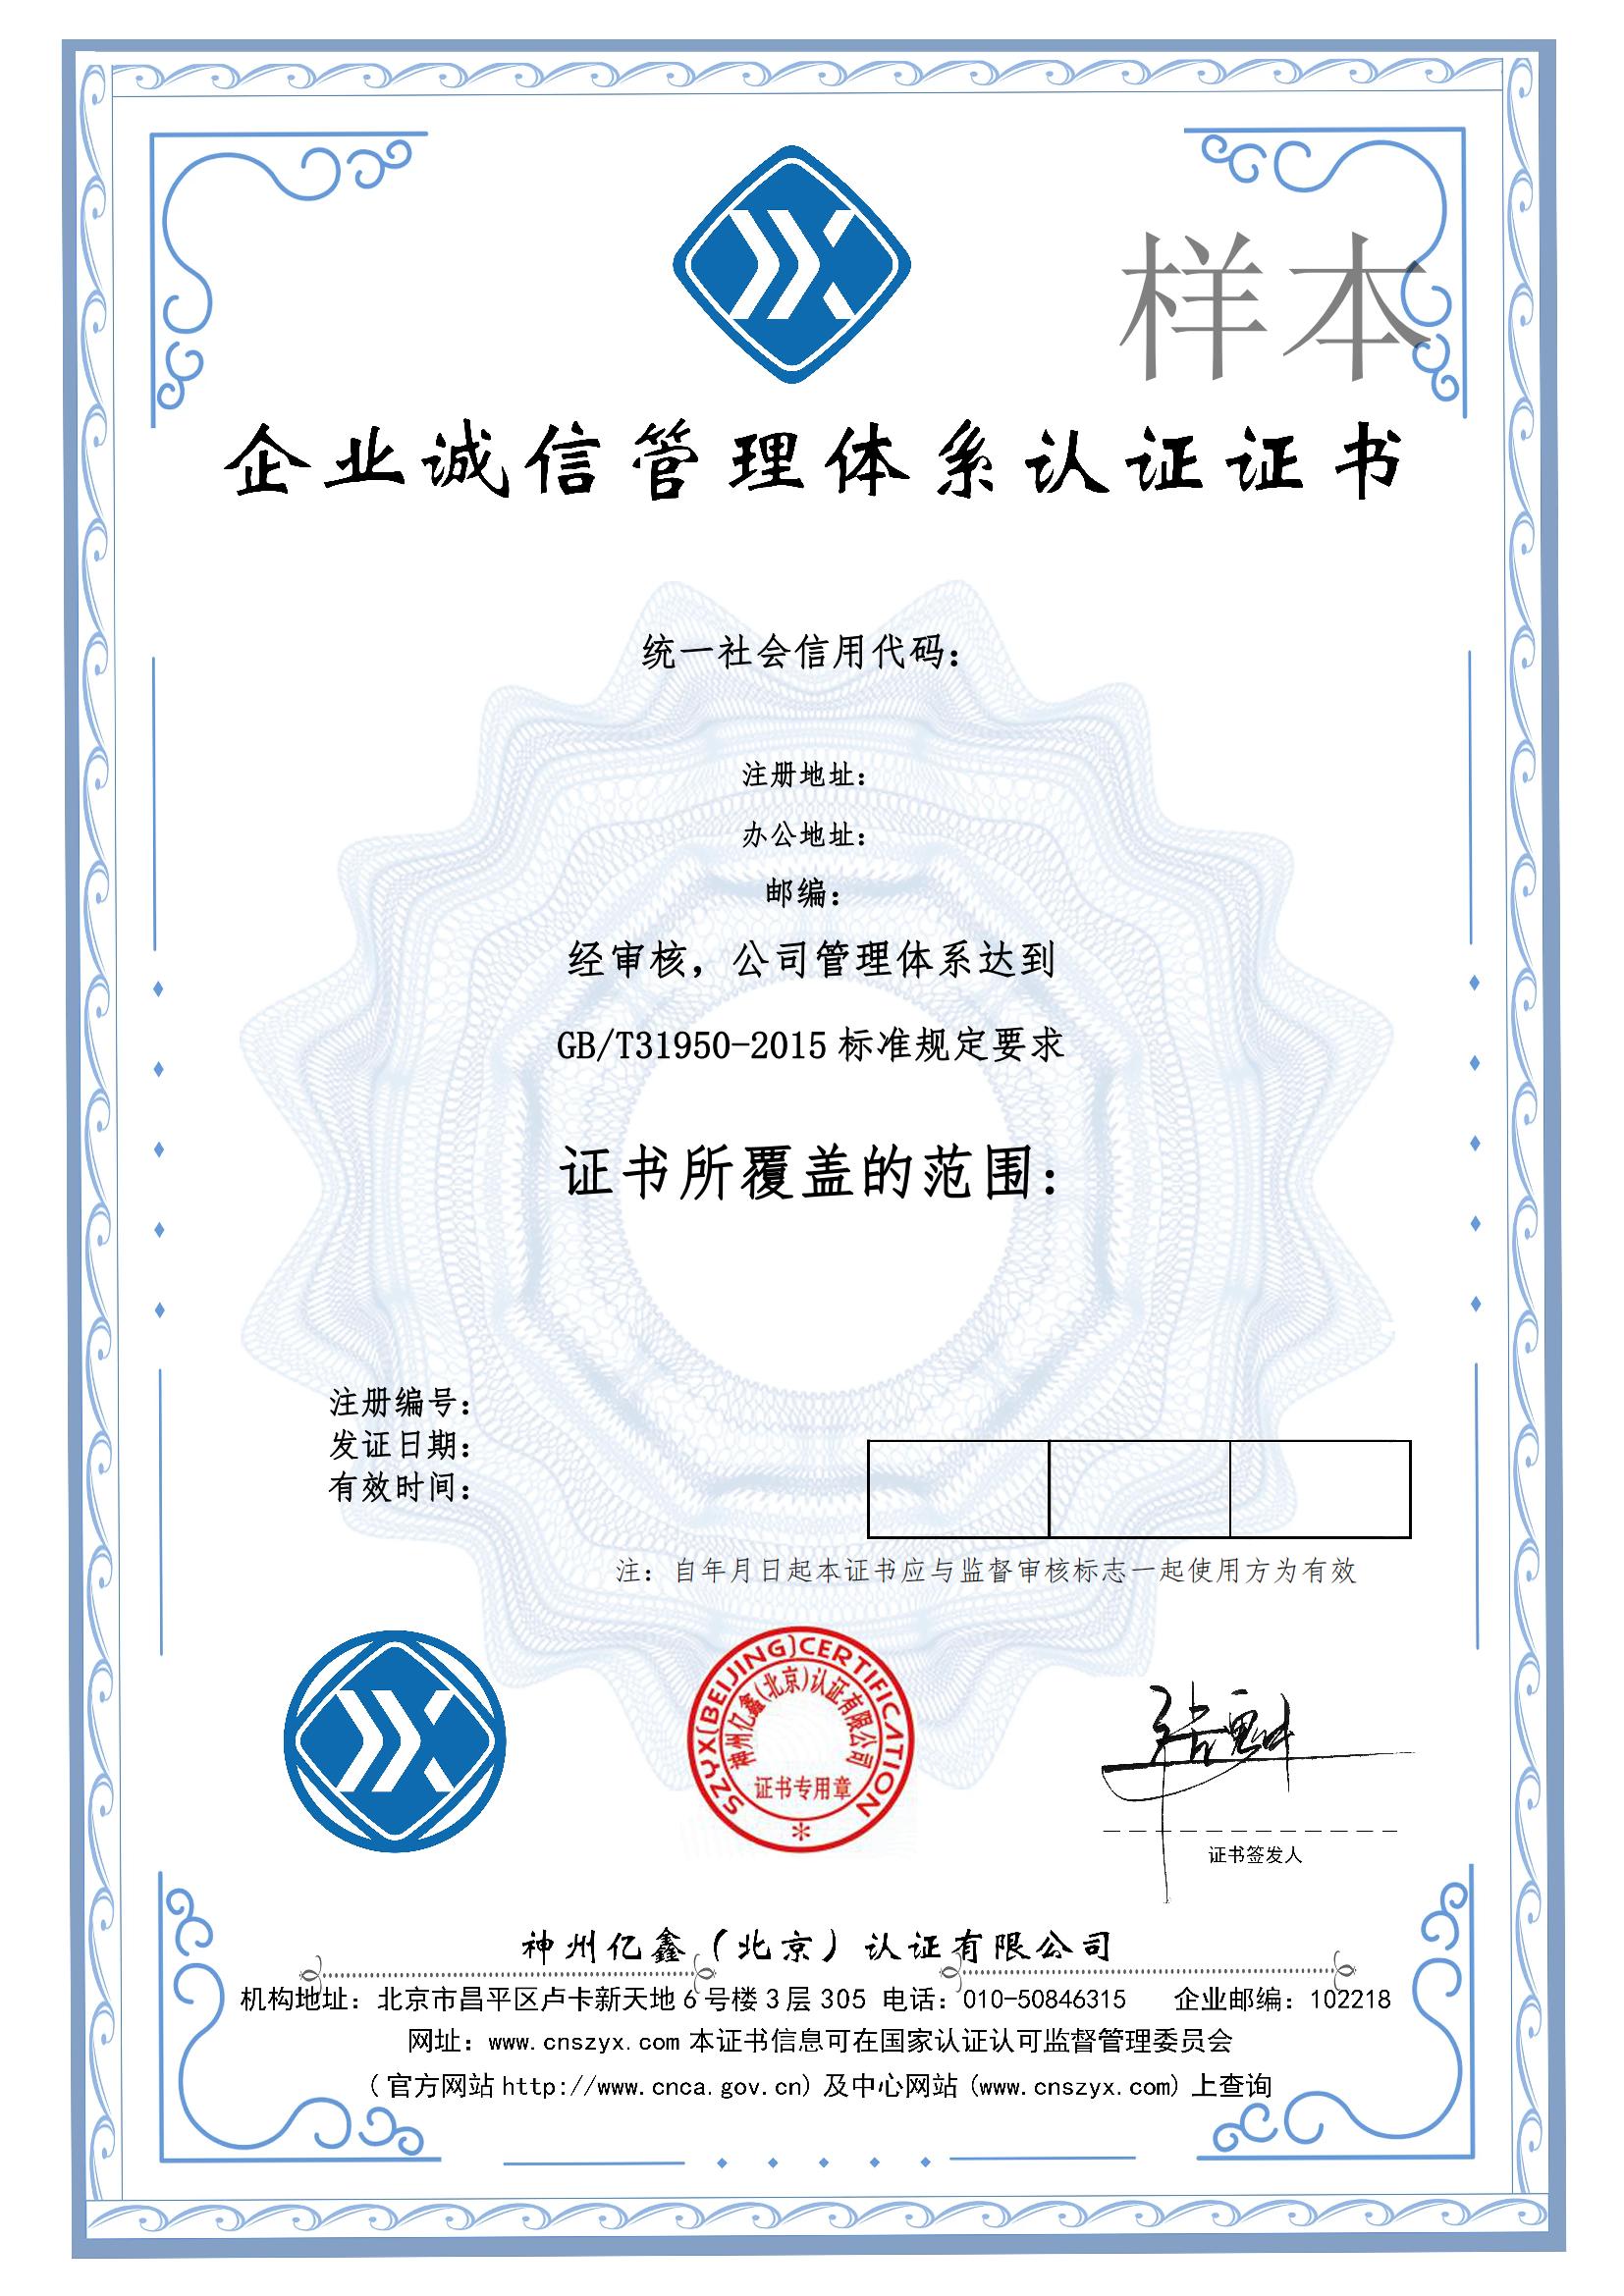 广州企业诚信管理体系认证证书办理流程